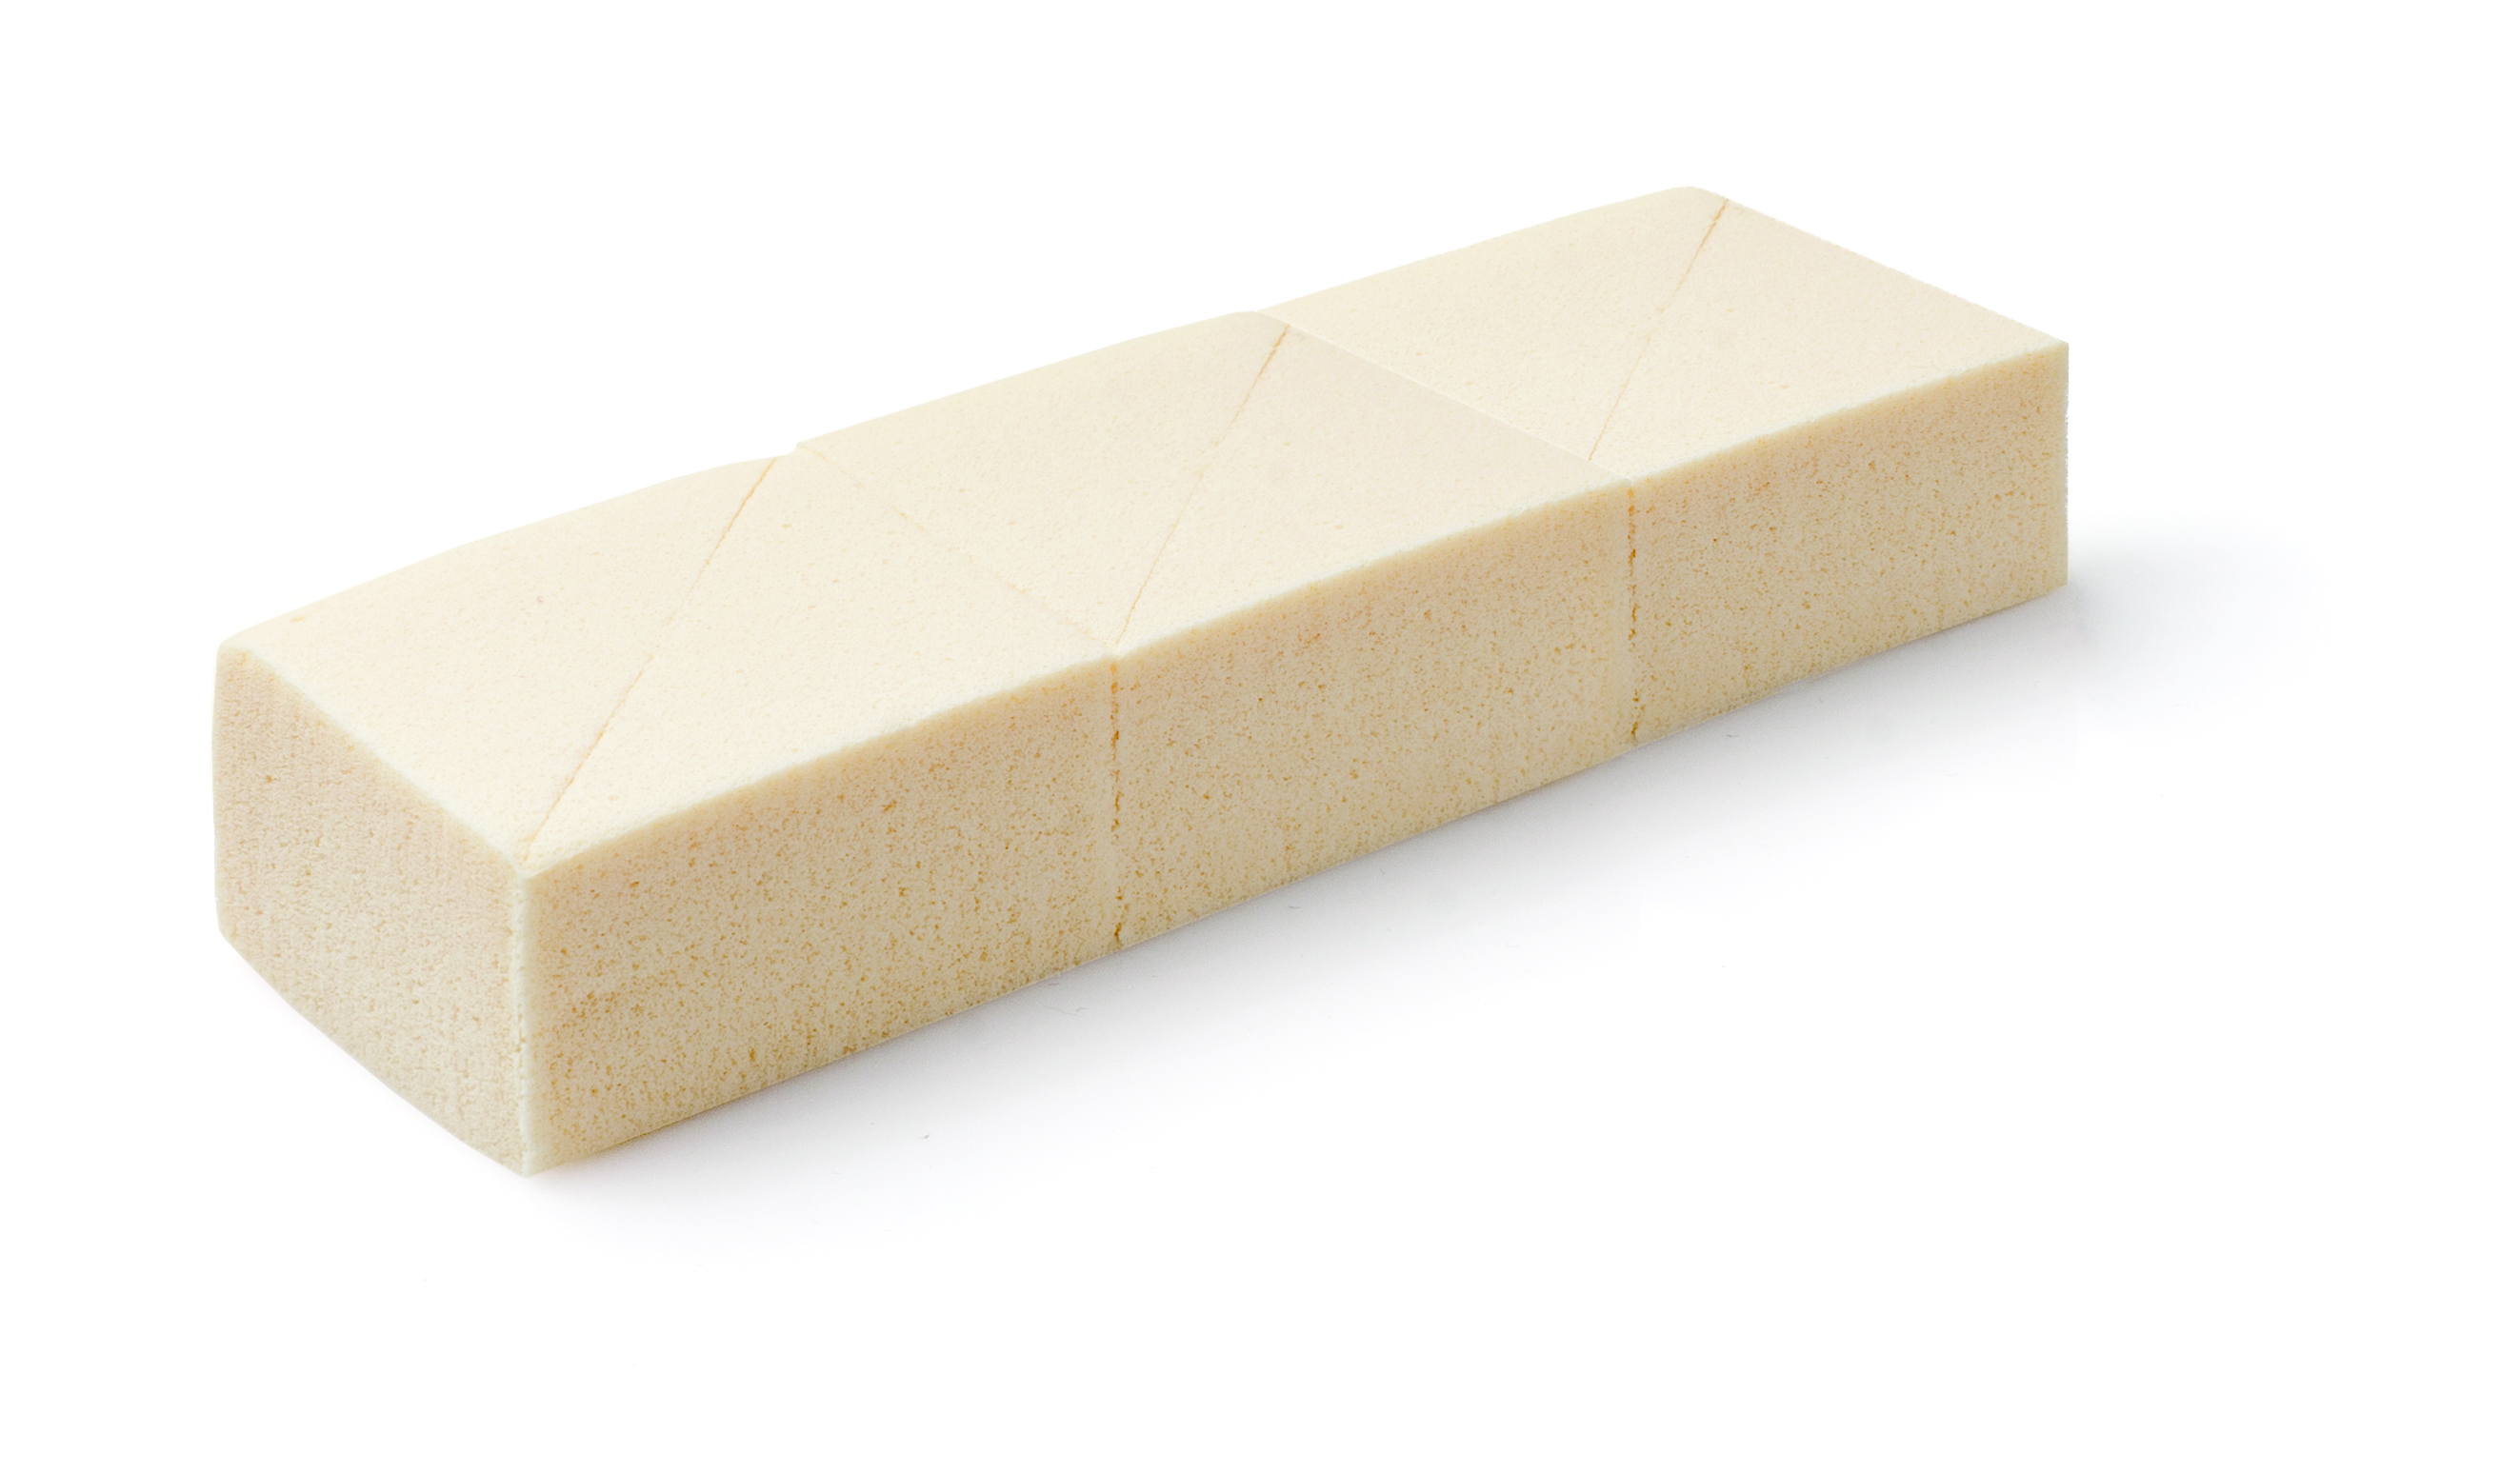 Спонж Latex Sponge Wedges 6 pieces латексный треугольный 6 шт./уп. спонж в футляре foundation sponge in box